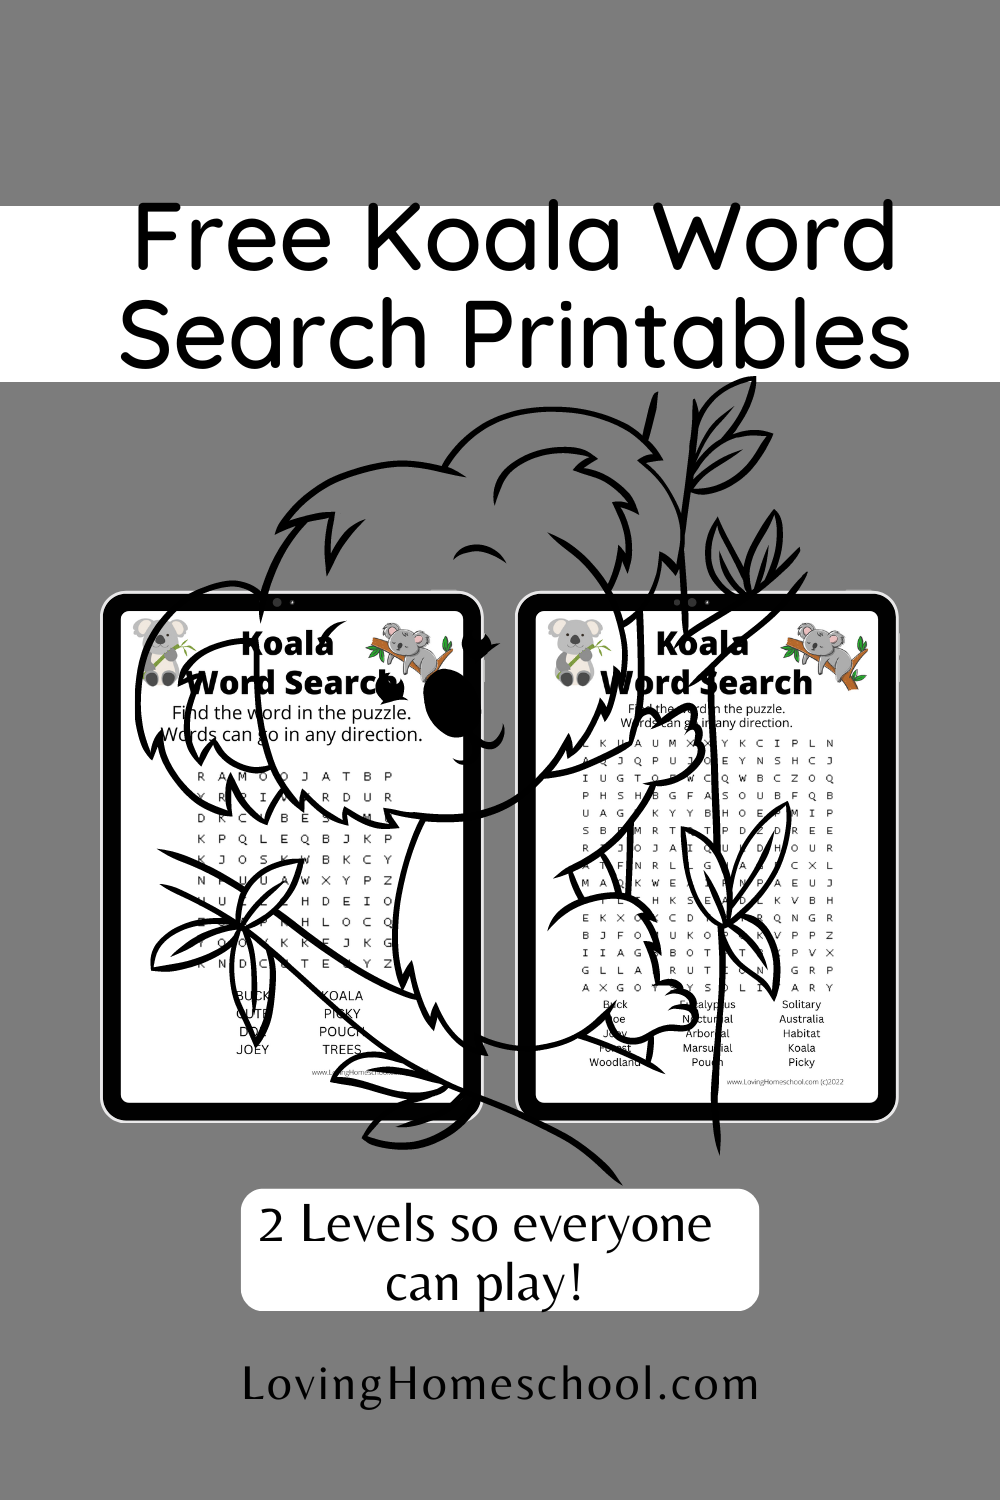 Free Koala Word Search Printables Pinterest pin